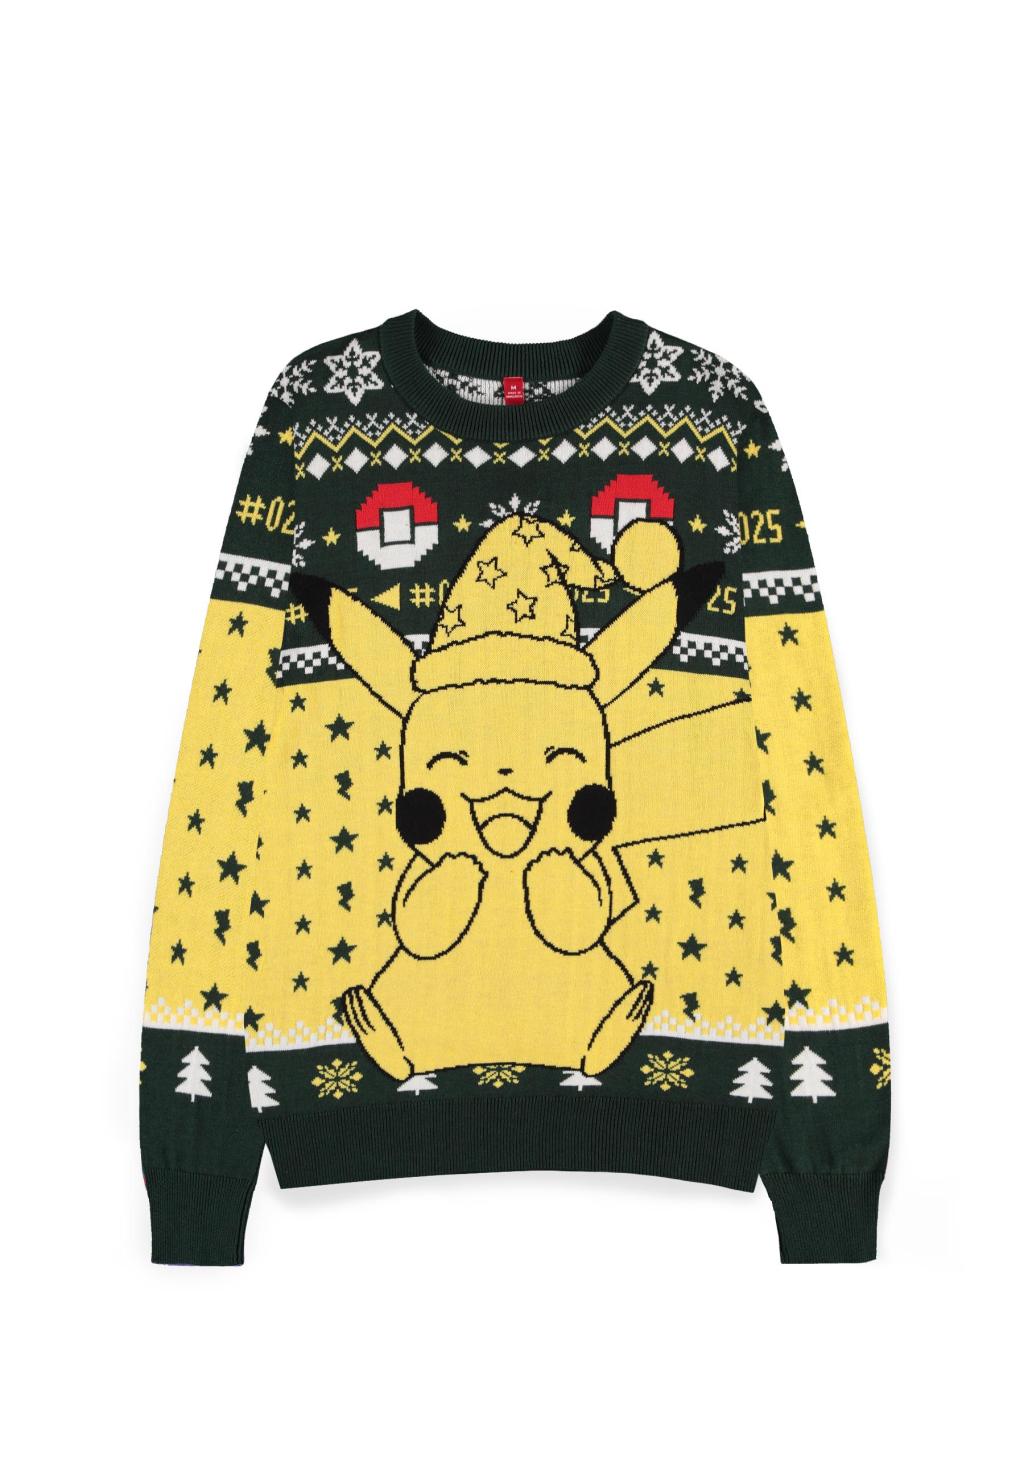 POKEMON - Happy Pikachu - Weihnachtspullover (2XL)